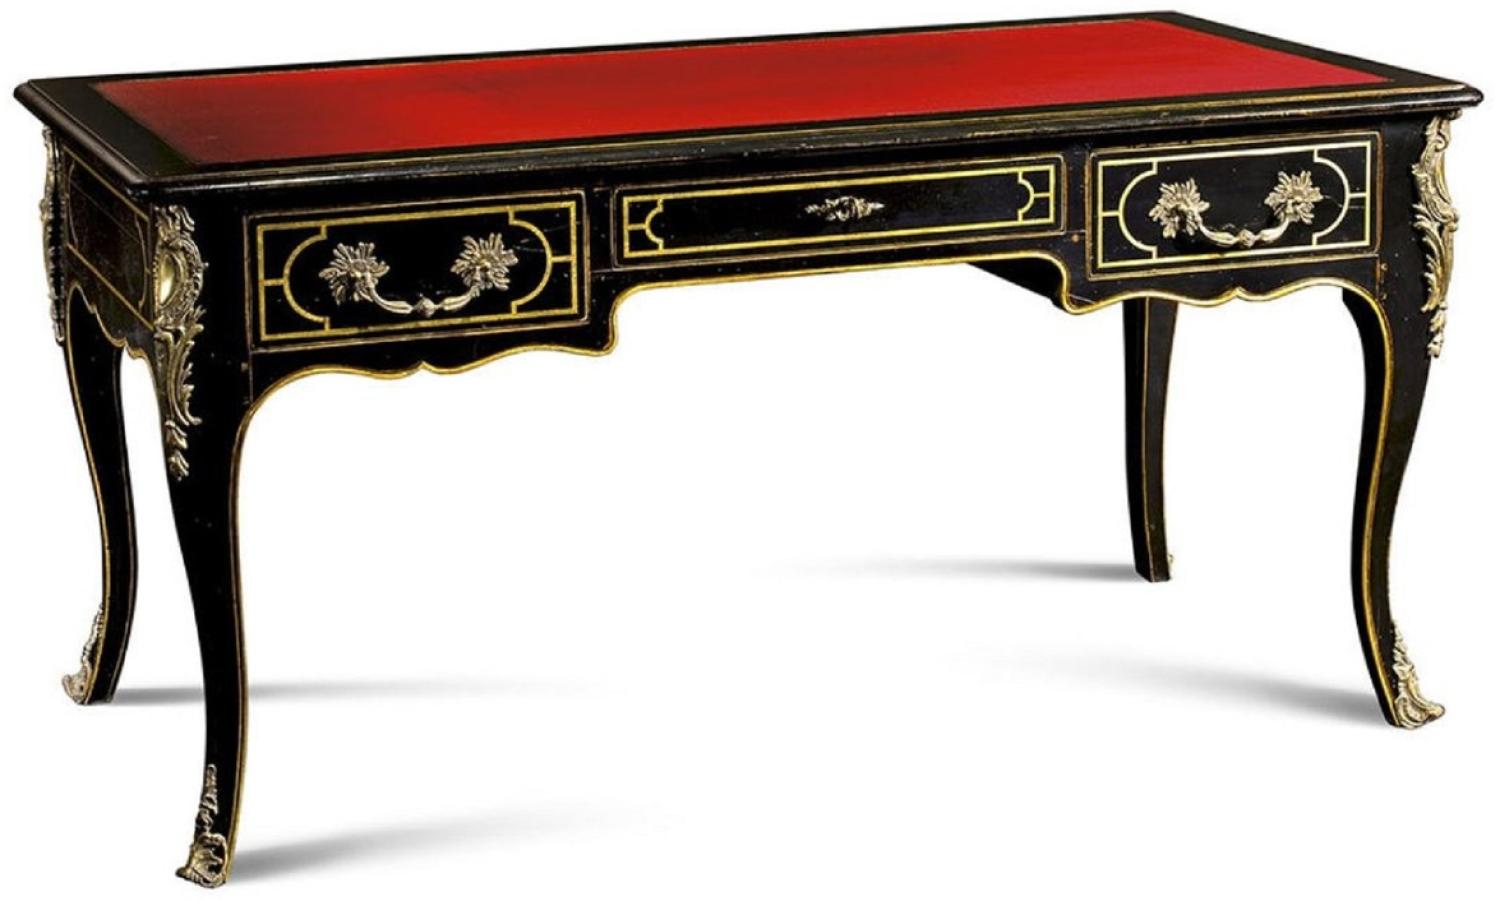 Casa Padrino Luxus Barock Schreibtisch mit 3 Schubladen Schwarz / Rot / Gold - Prunkvoller handgefertigter Massivholz Bürotisch - Barock Büromöbel - Luxus Qualität - Made in Italy Bild 1